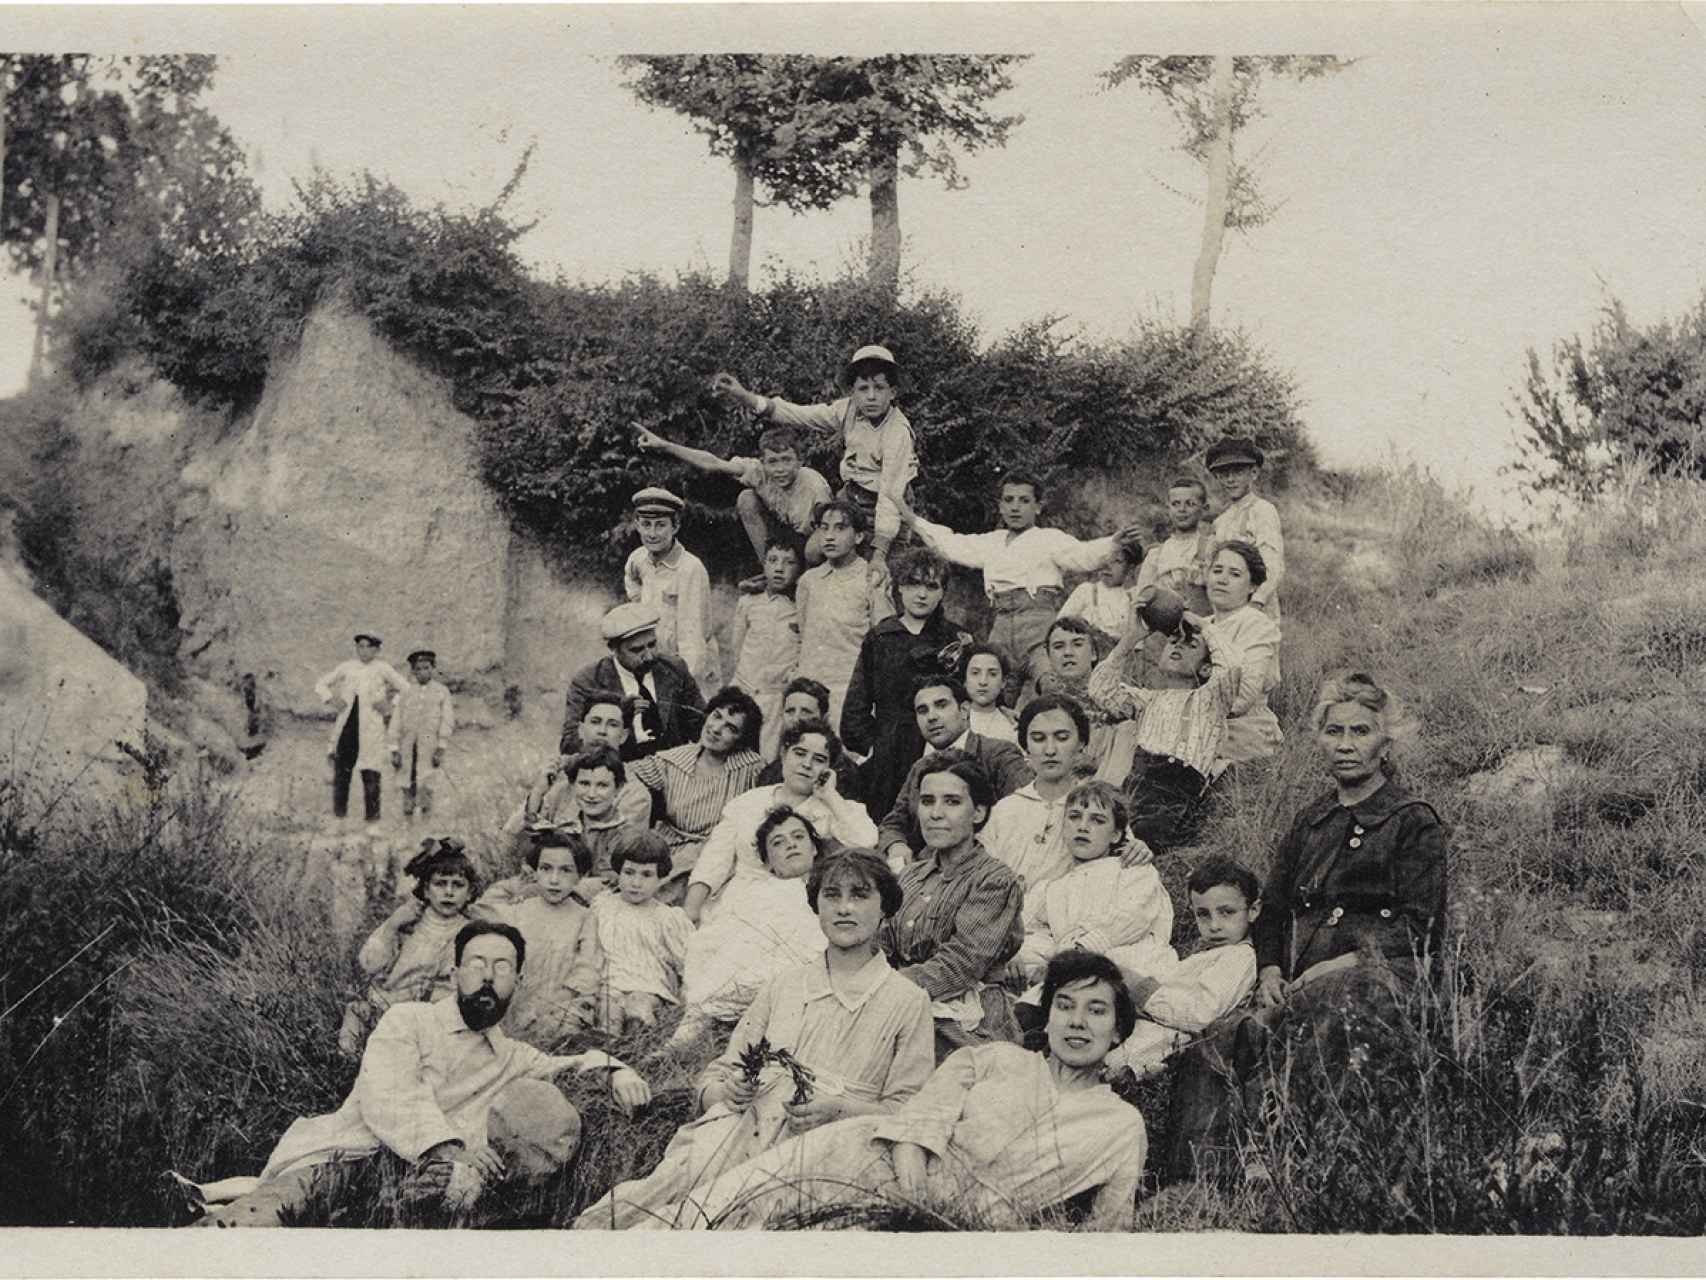 Retrato de grupo del Ateneu Igualadí de la Classe Obrera en La Llacuna en la década de 1920